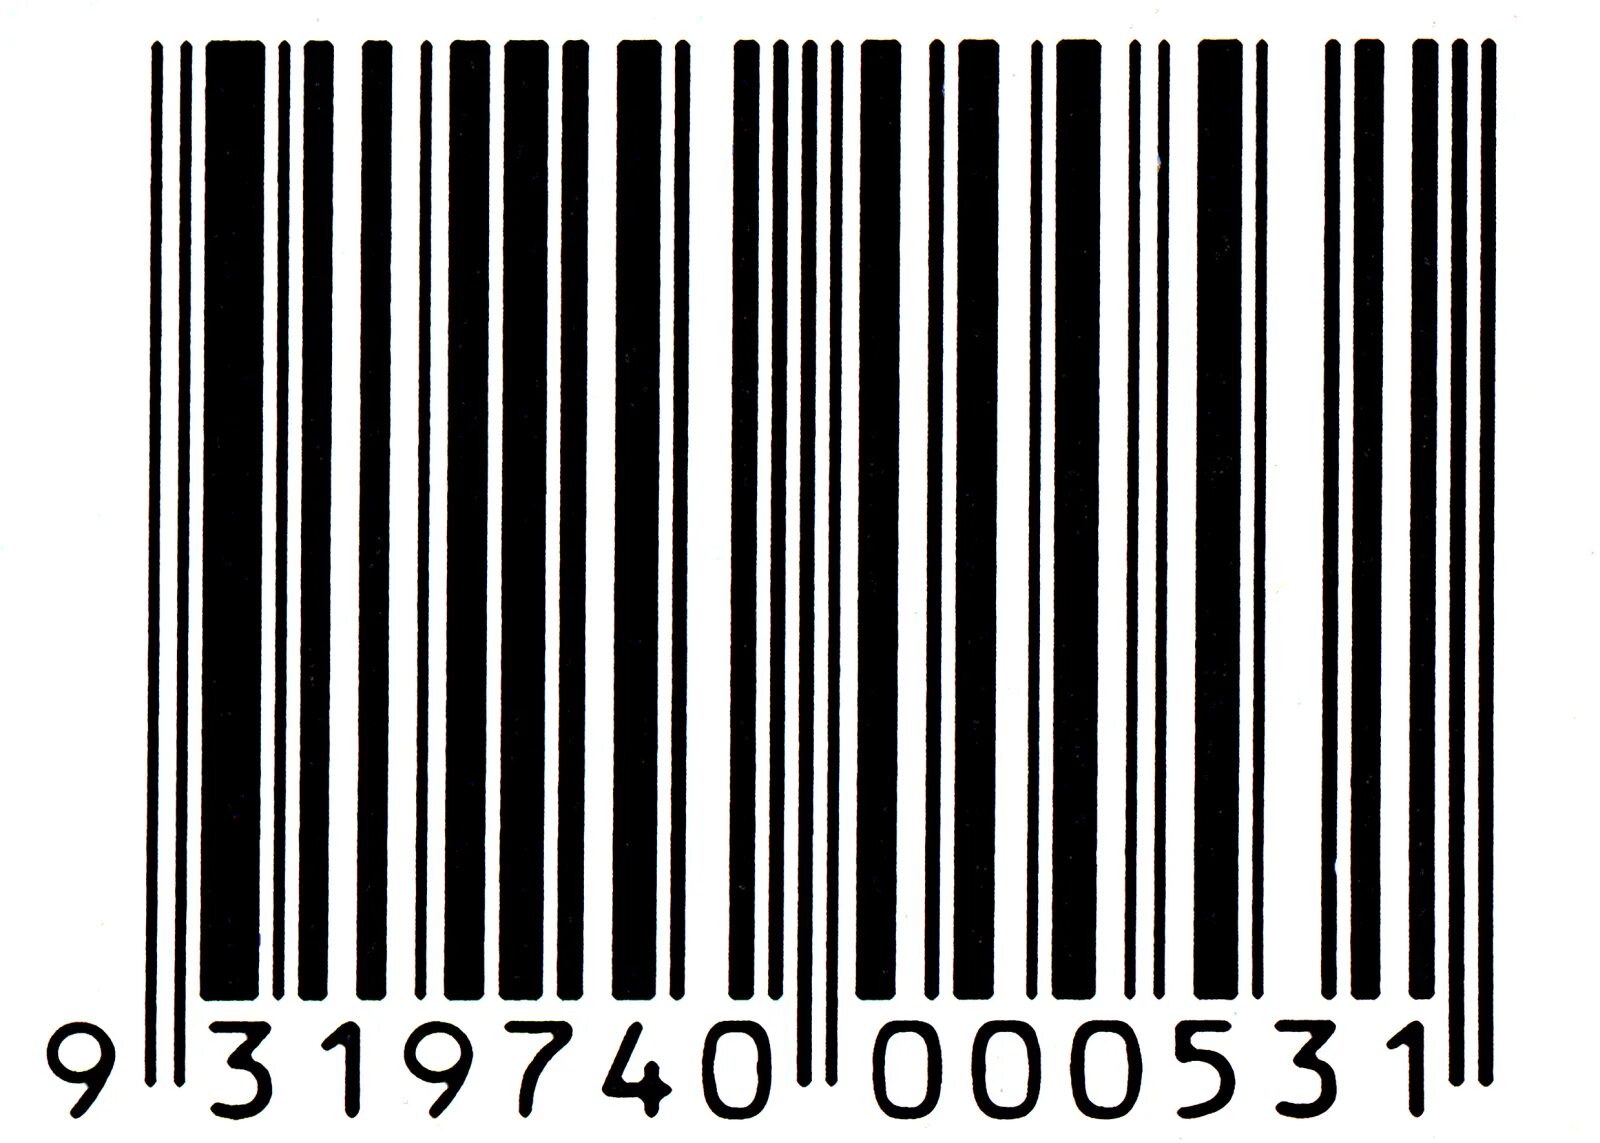 Barcode 5.3 1. Штрих код. Штриховой код. Любой штрих код. Белый штрих код на черном фоне.